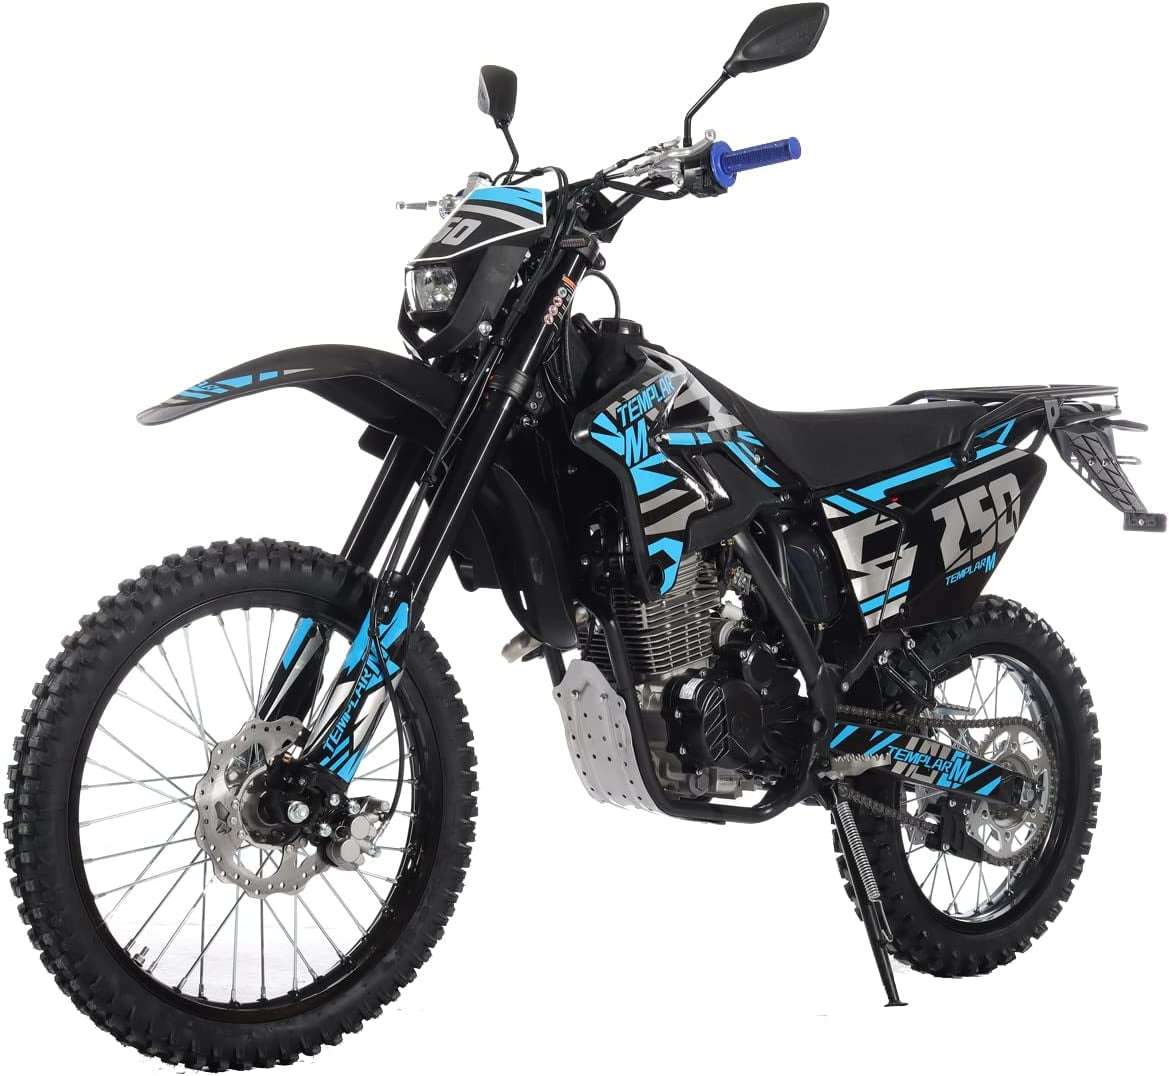 X-Pro Brand New 250cc Dirt Bike All Lights 5 Manual Transmission,  Electric/Kick Start 21/18 Wheels 